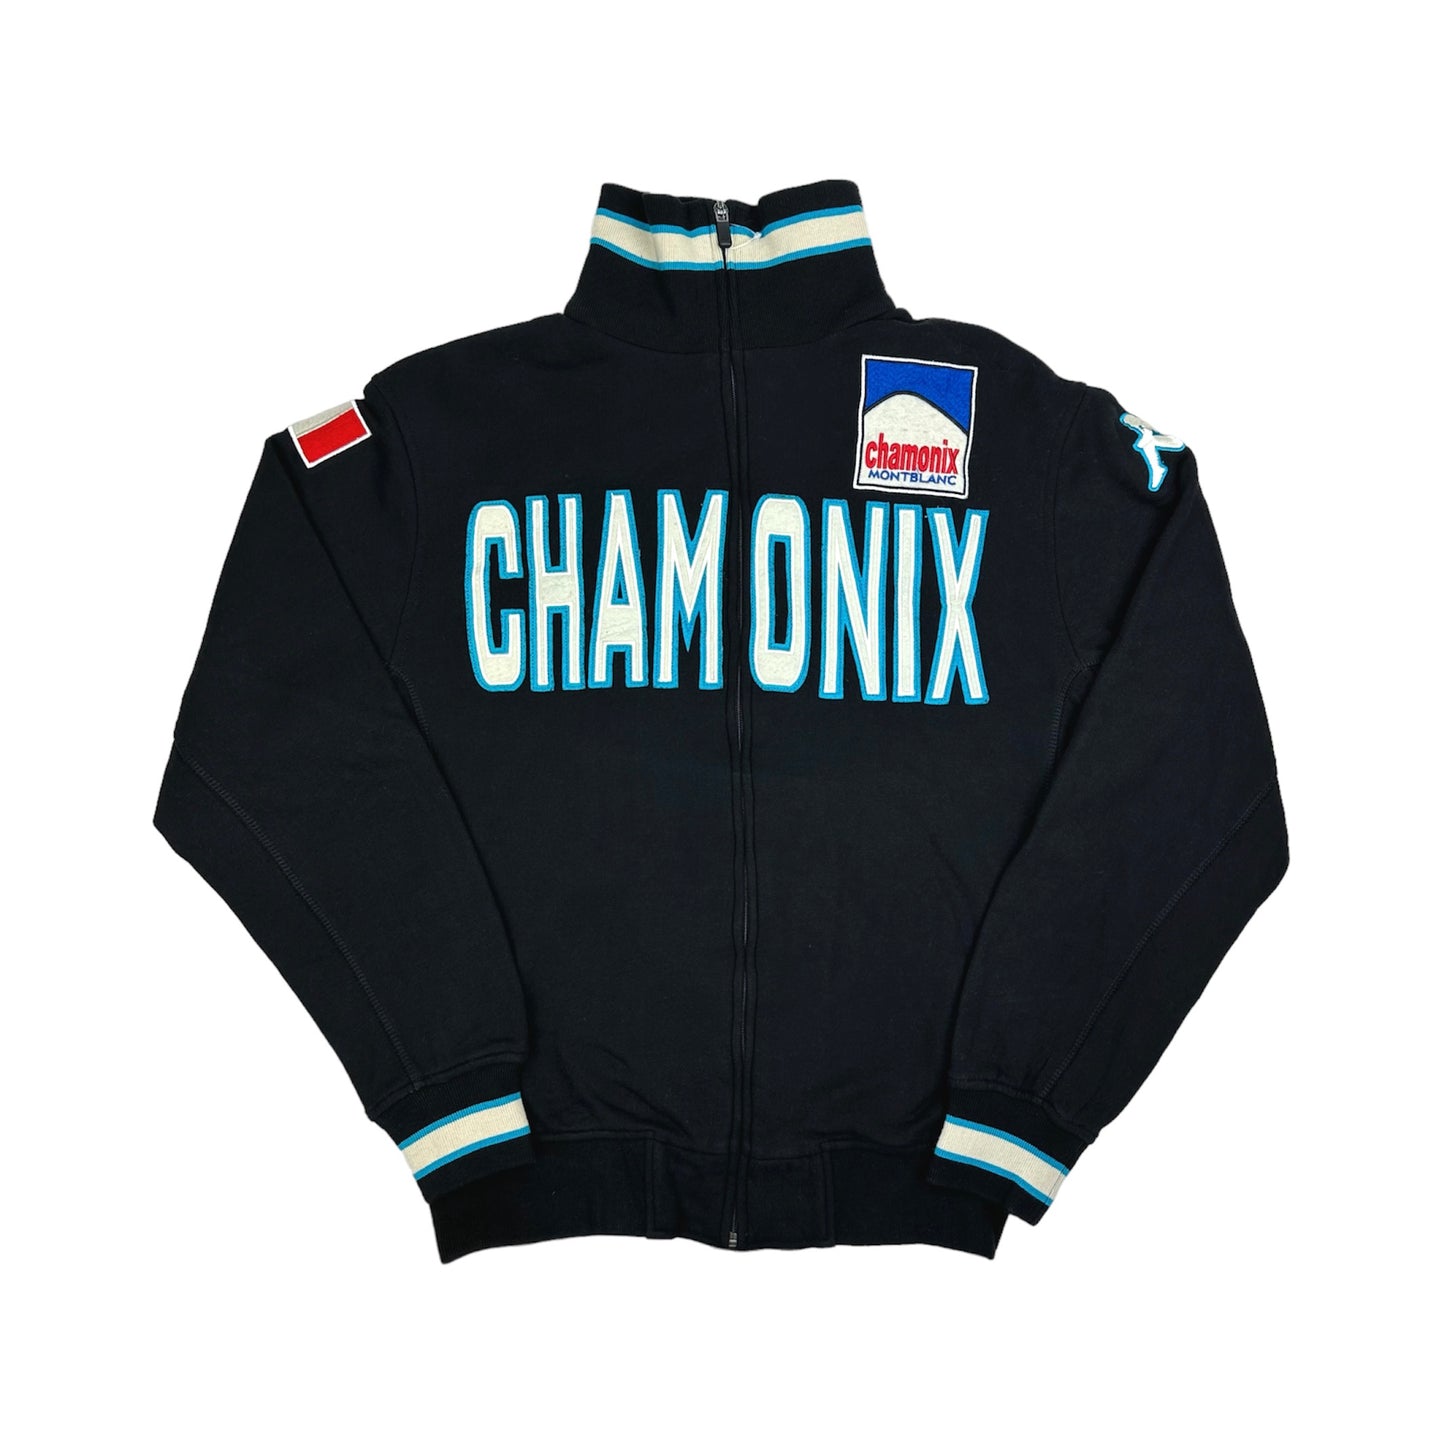 Kappa Chamonix Jacket